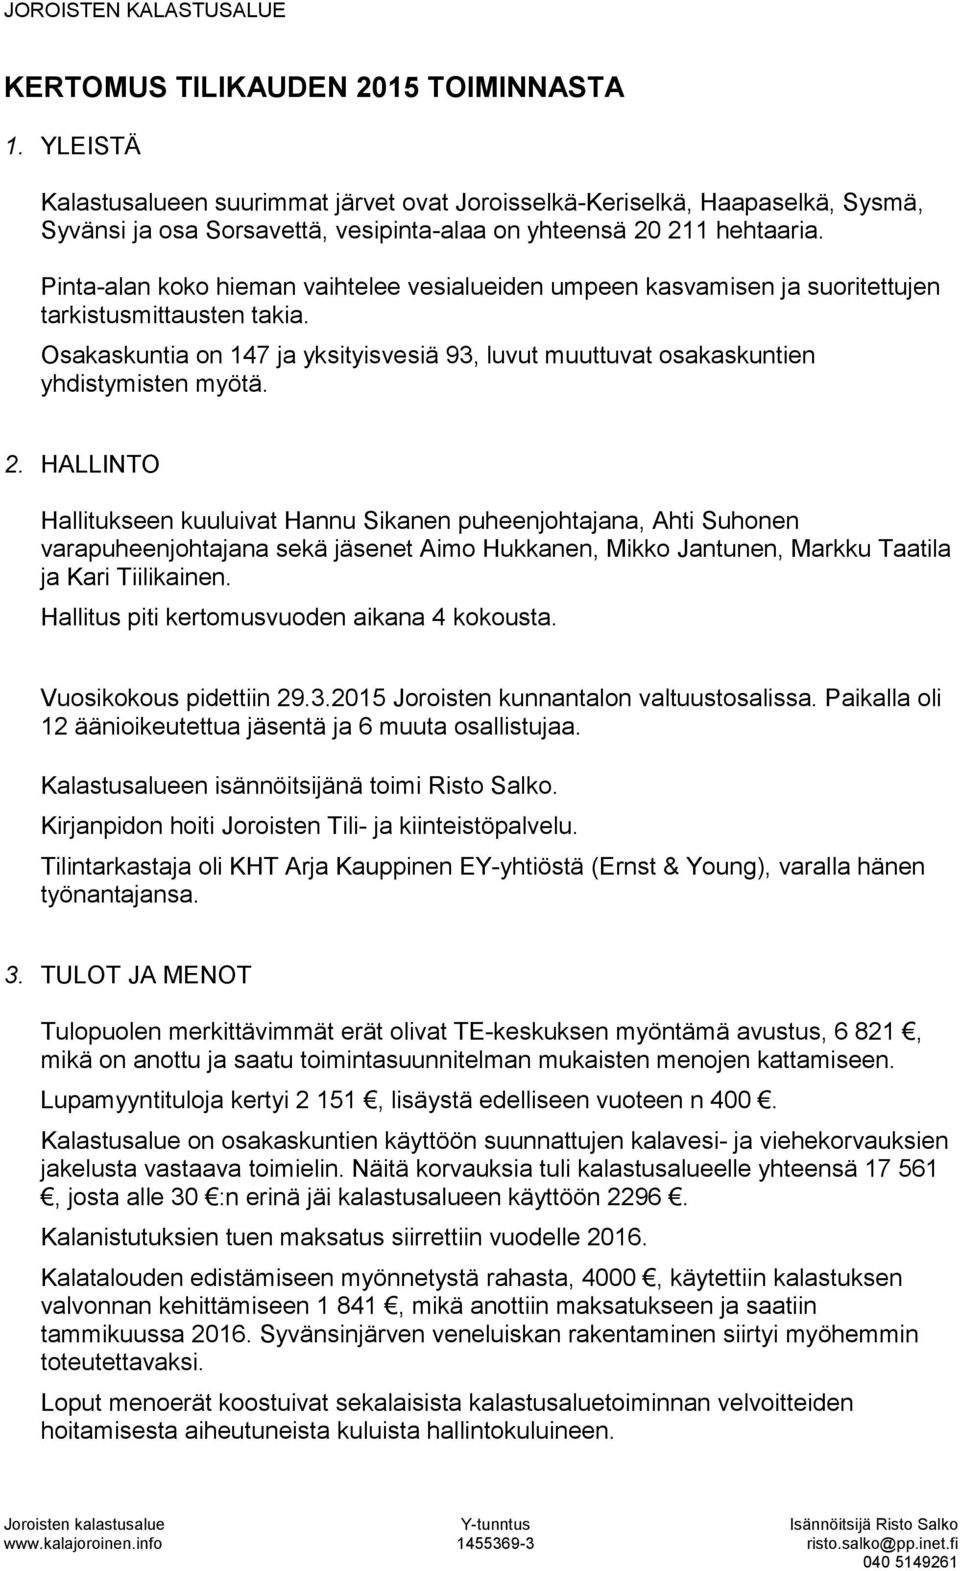 2. HALLINTO Hallitukseen kuuluivat Hannu Sikanen puheenjohtajana, Ahti Suhonen varapuheenjohtajana sekä jäsenet Aimo Hukkanen, Mikko Jantunen, Markku Taatila ja Kari Tiilikainen.